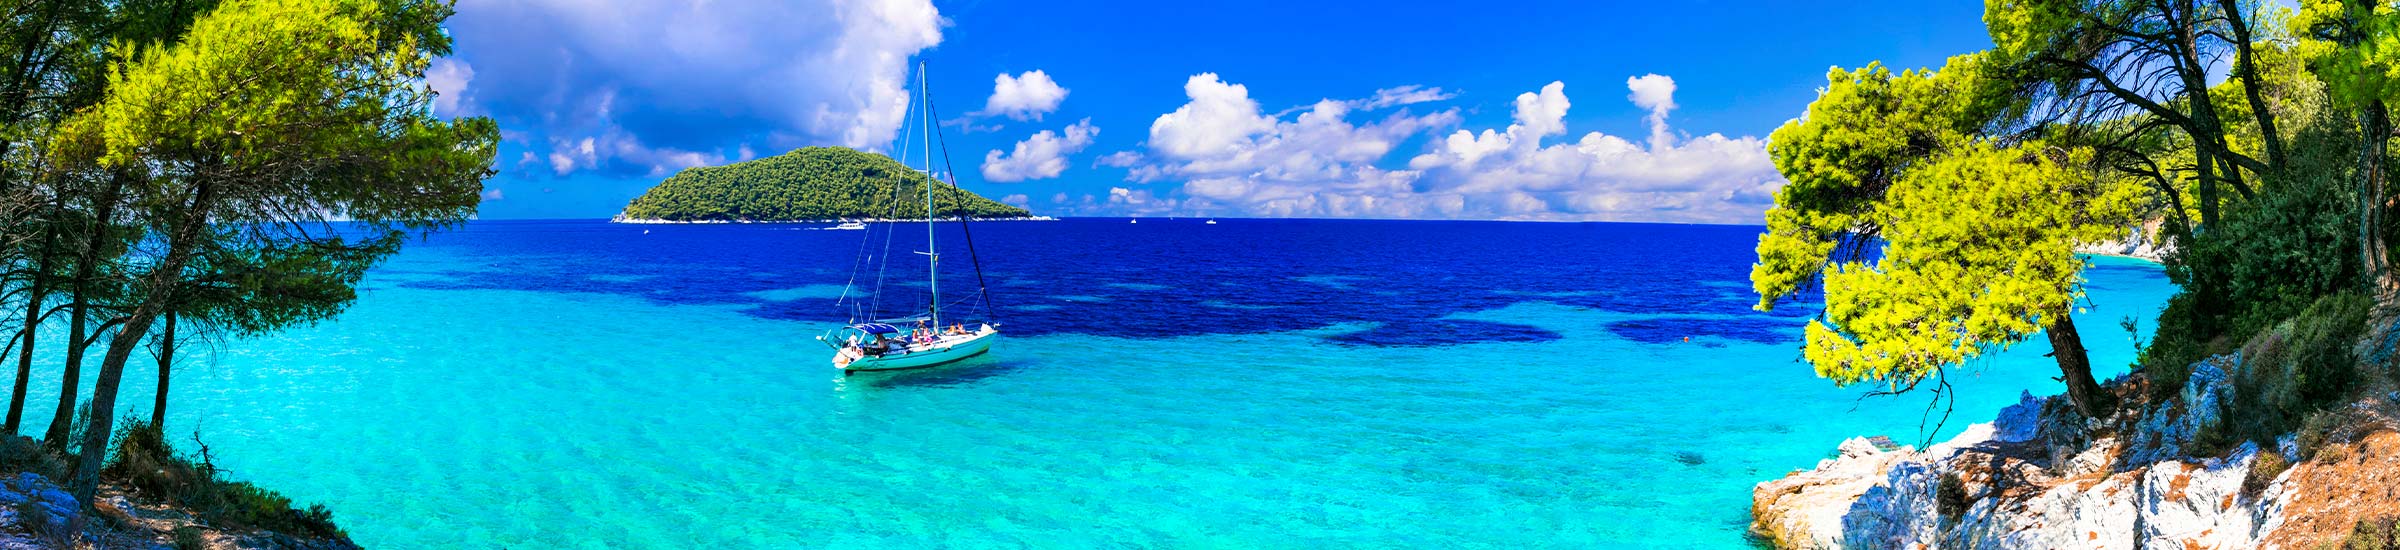 Griechische Inseln mit Ausblick auf das blaue Meer